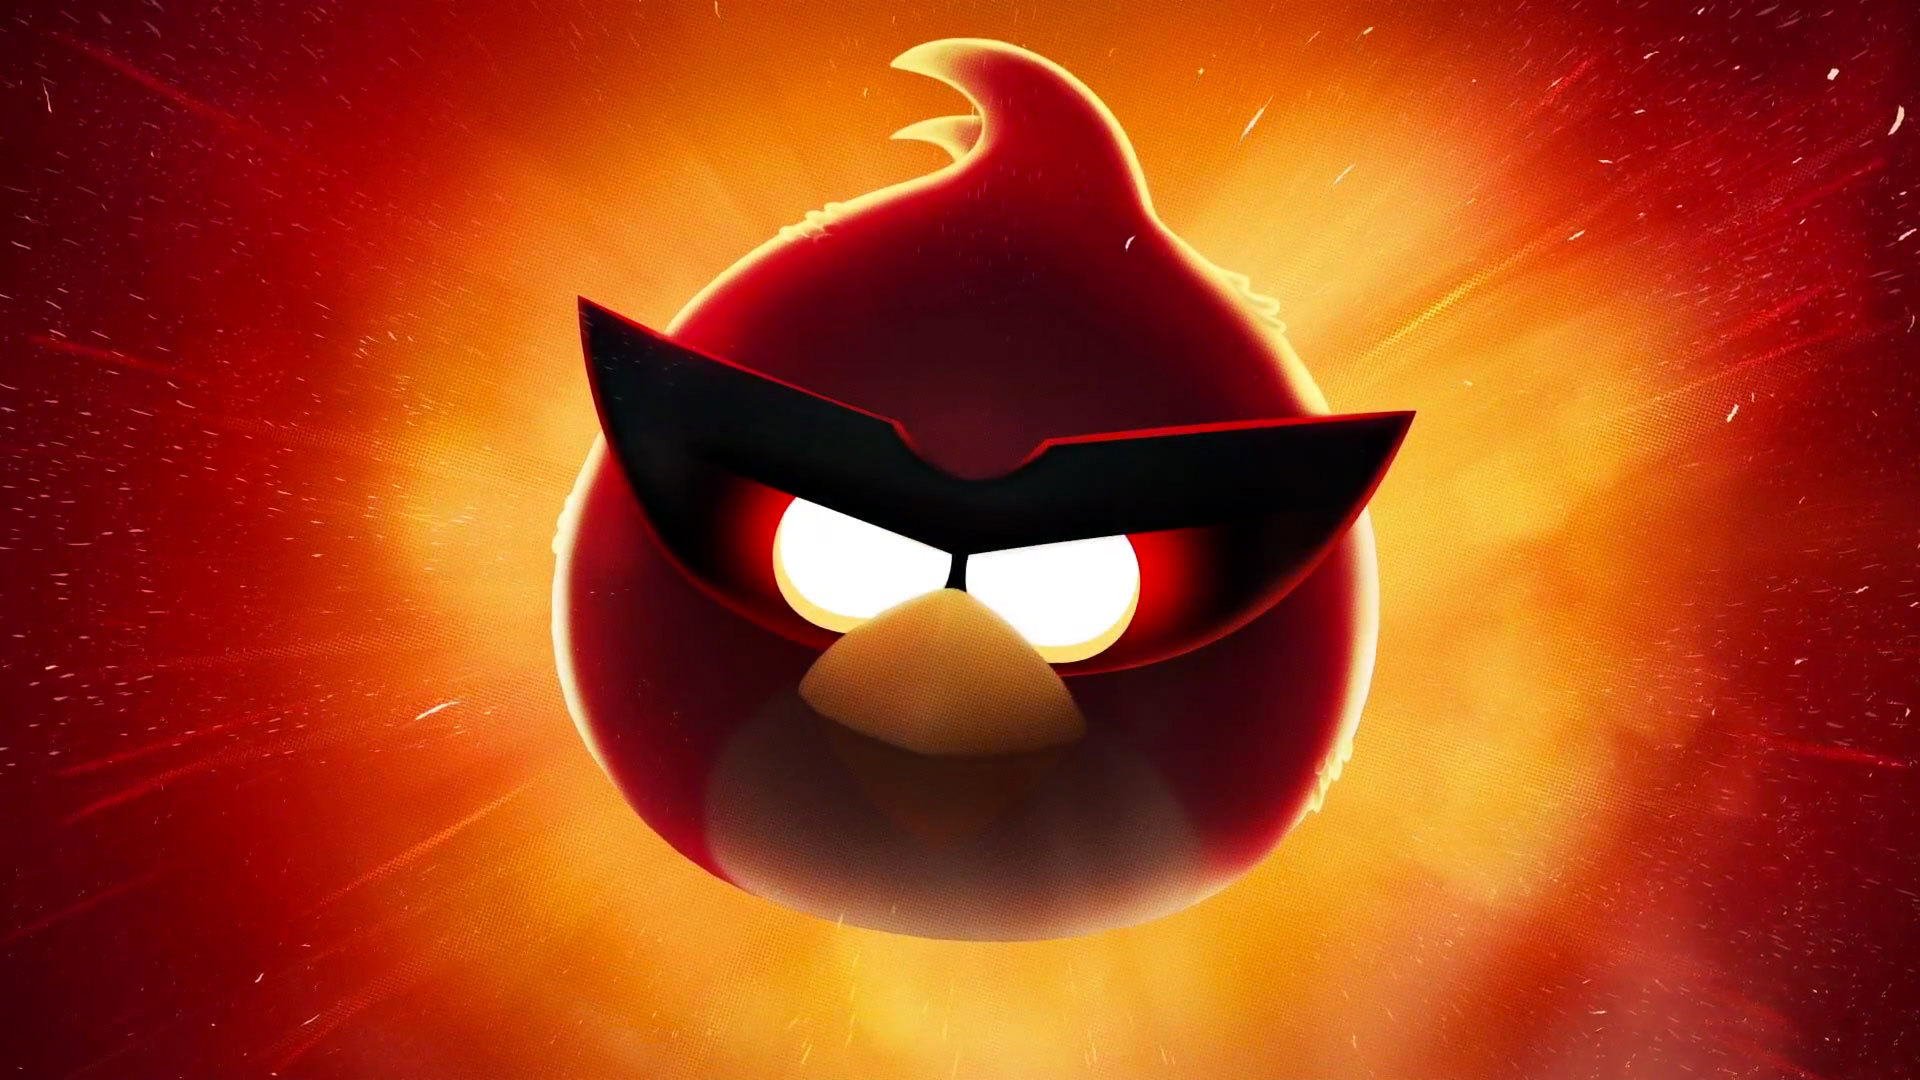 Скачать обои Злые Птицы (Angry Birds) на телефон бесплатно